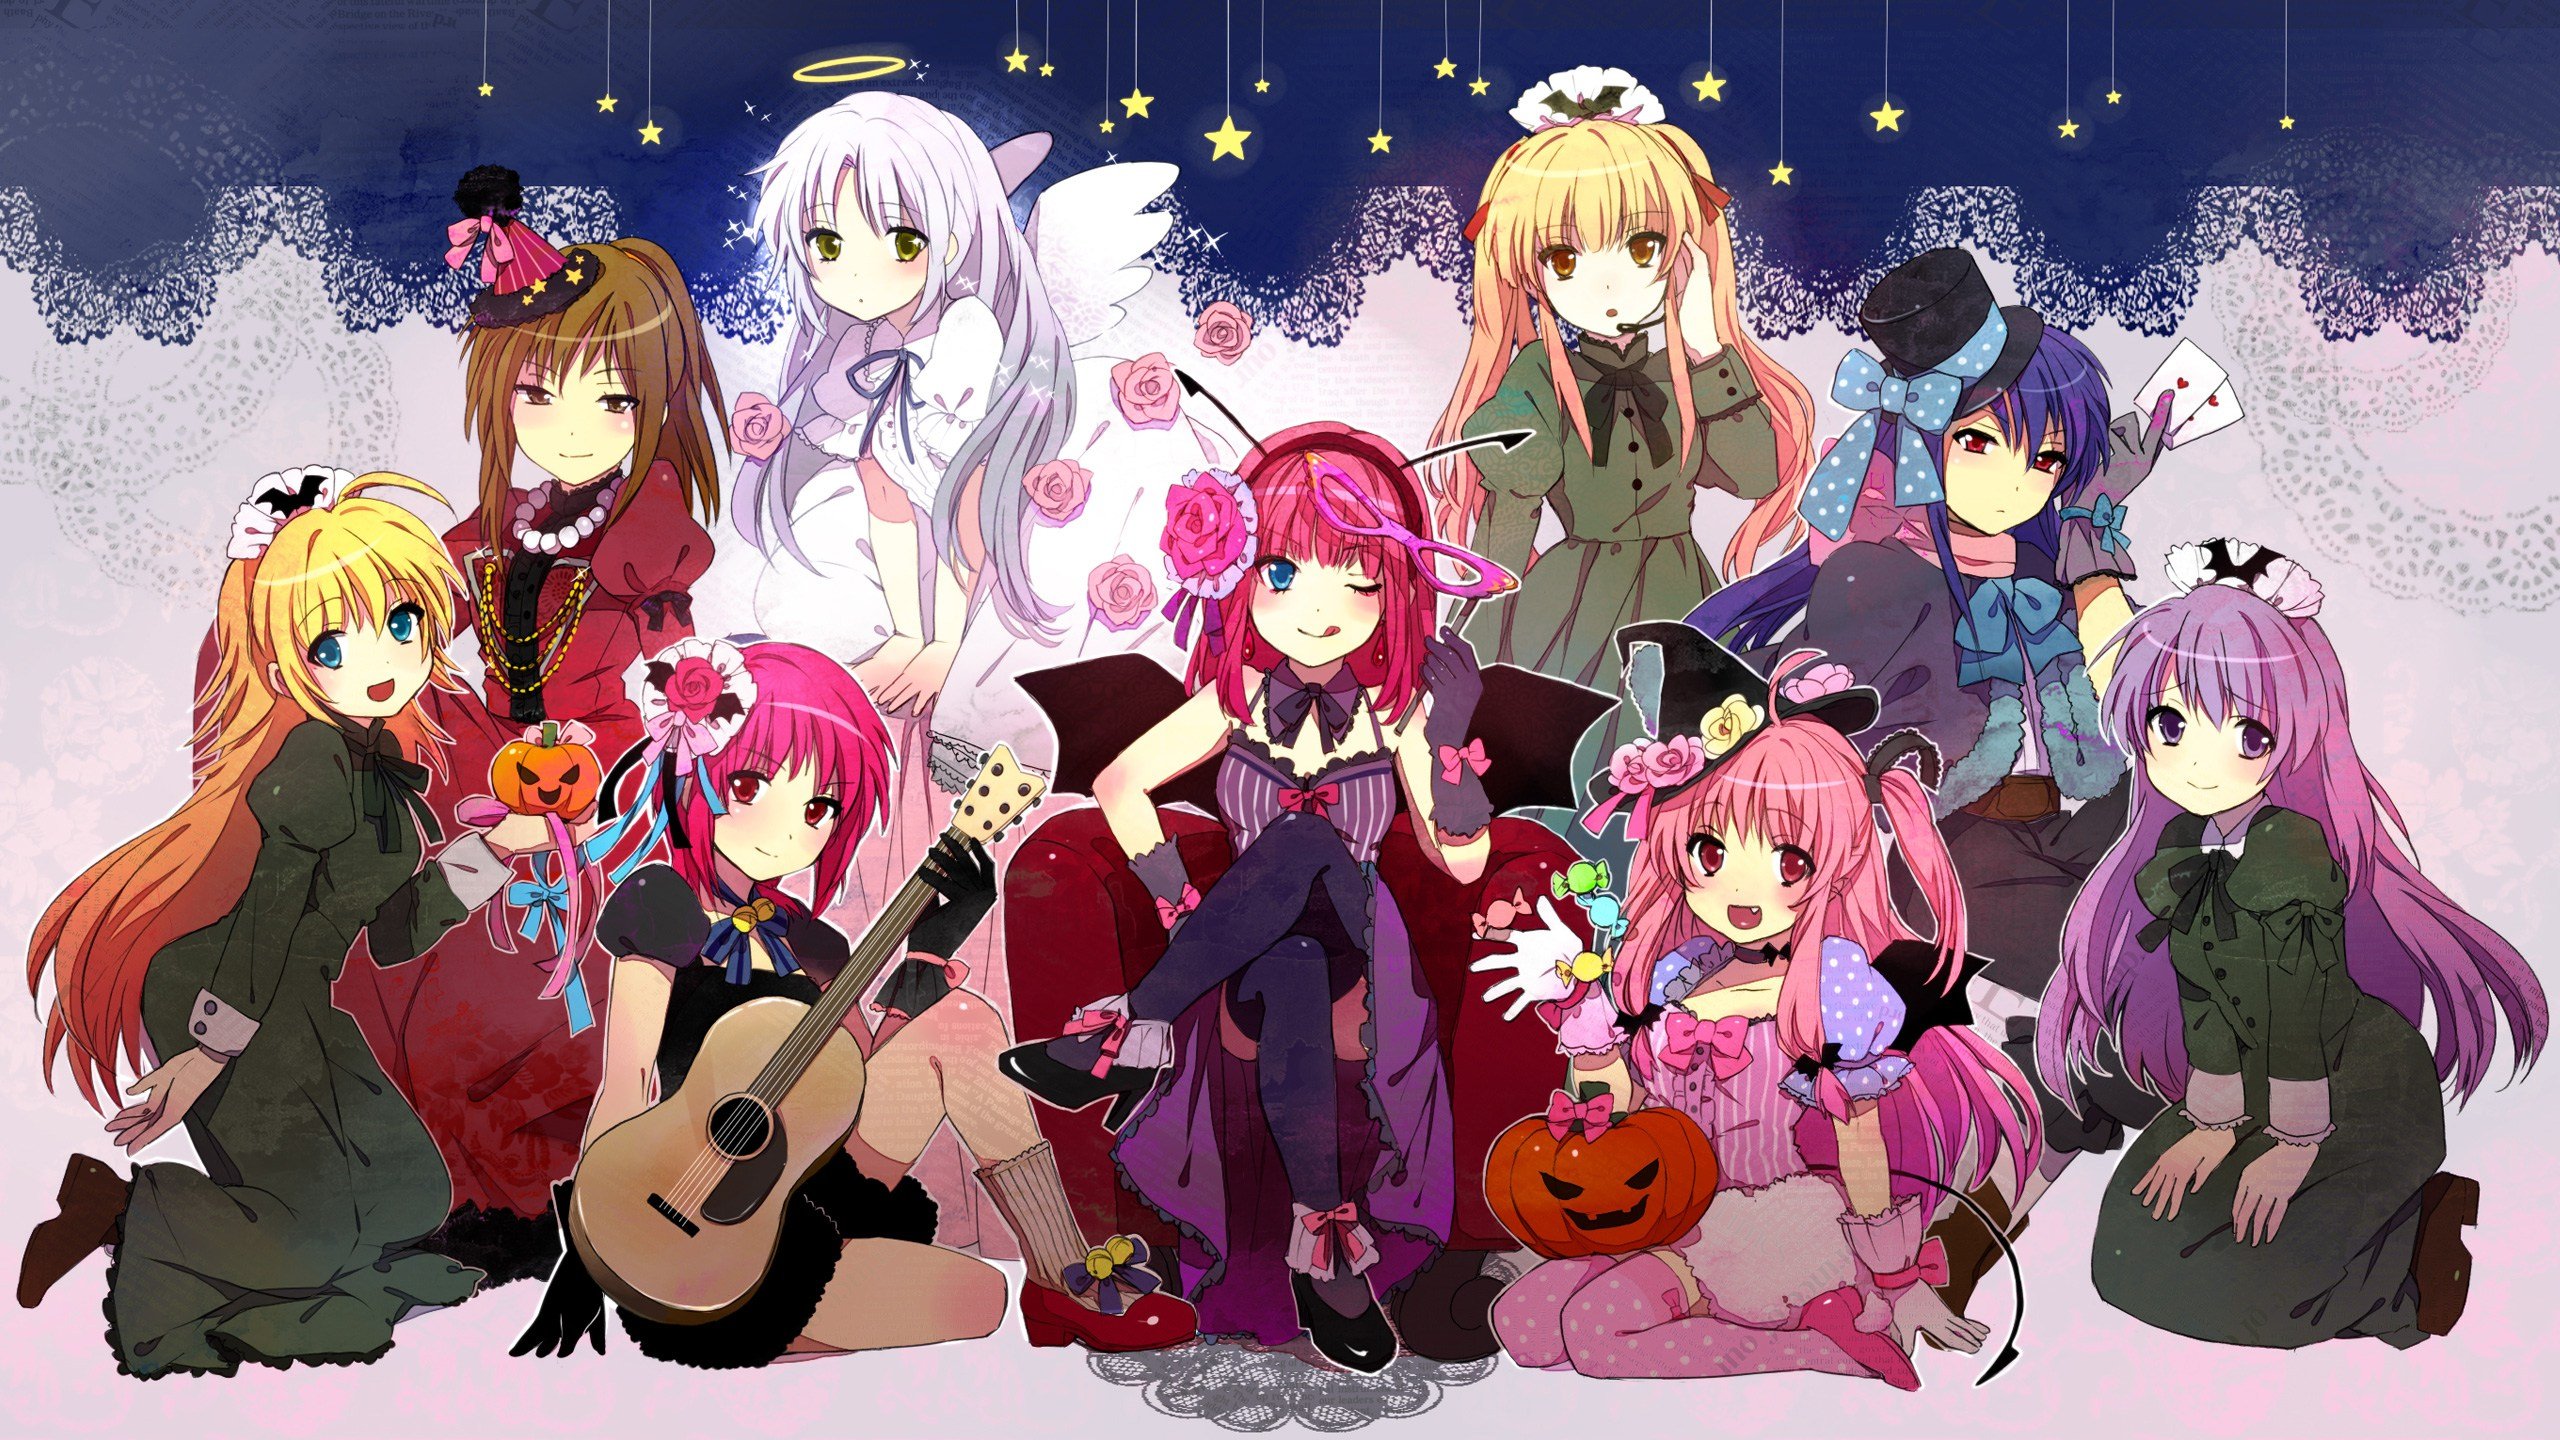 angel, Beats, Anime, Series, Character, Group, Girls, Flower, Pink, Rose, Guitar, Witch, Kawaii, Cute Wallpaper